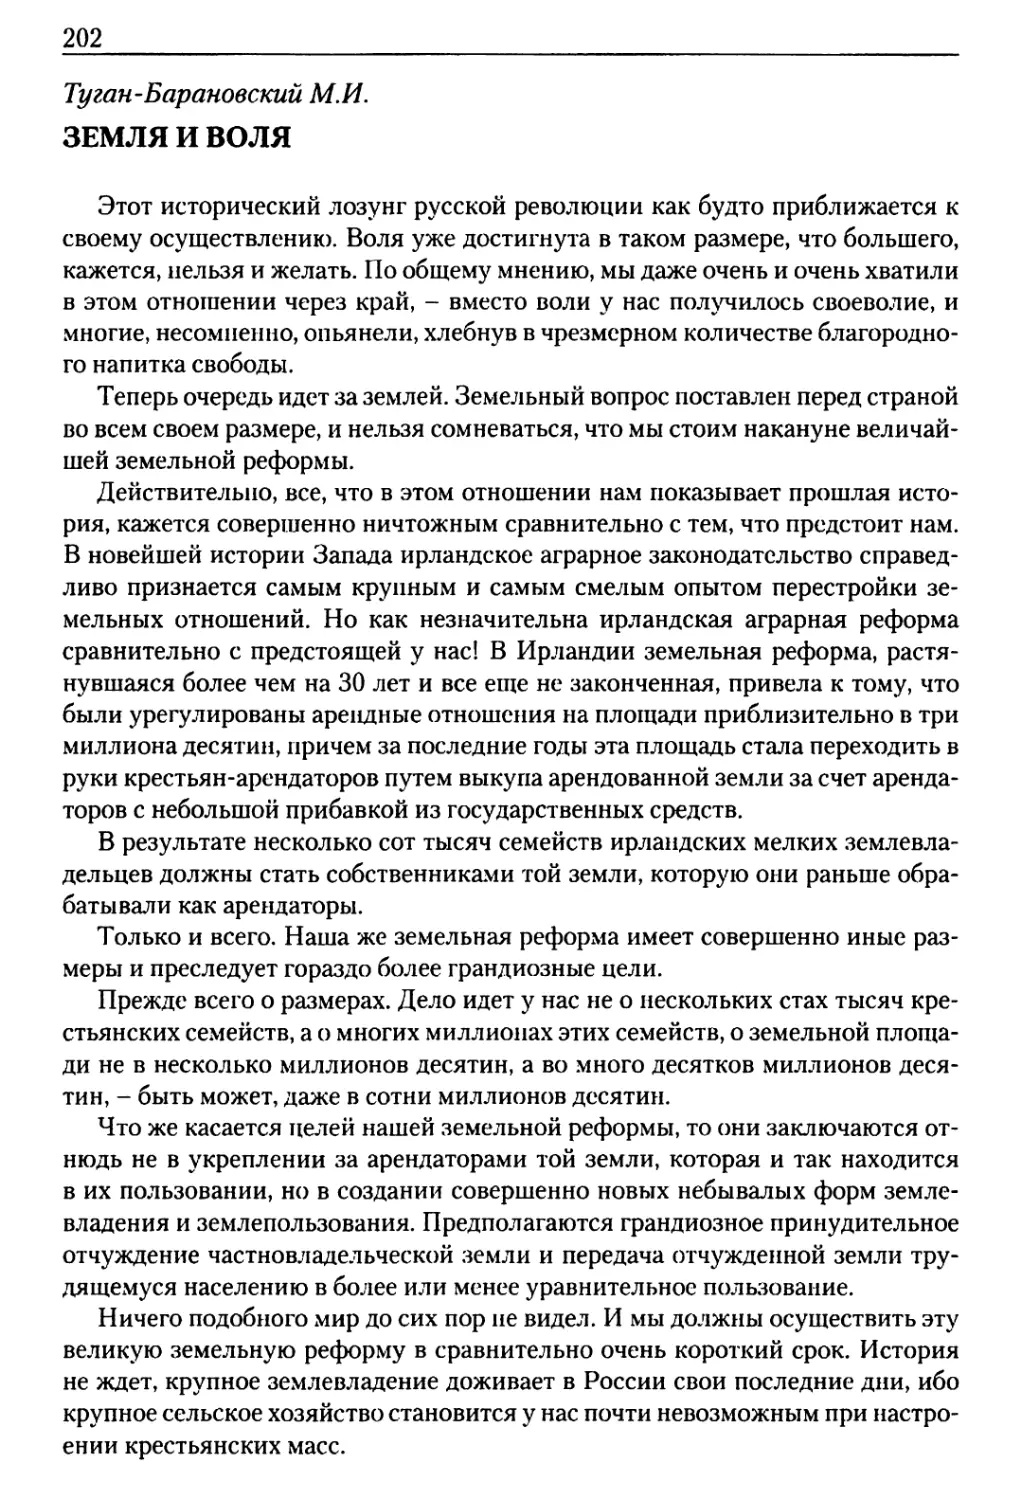 Туган-Барановский М.И. Земля и воля